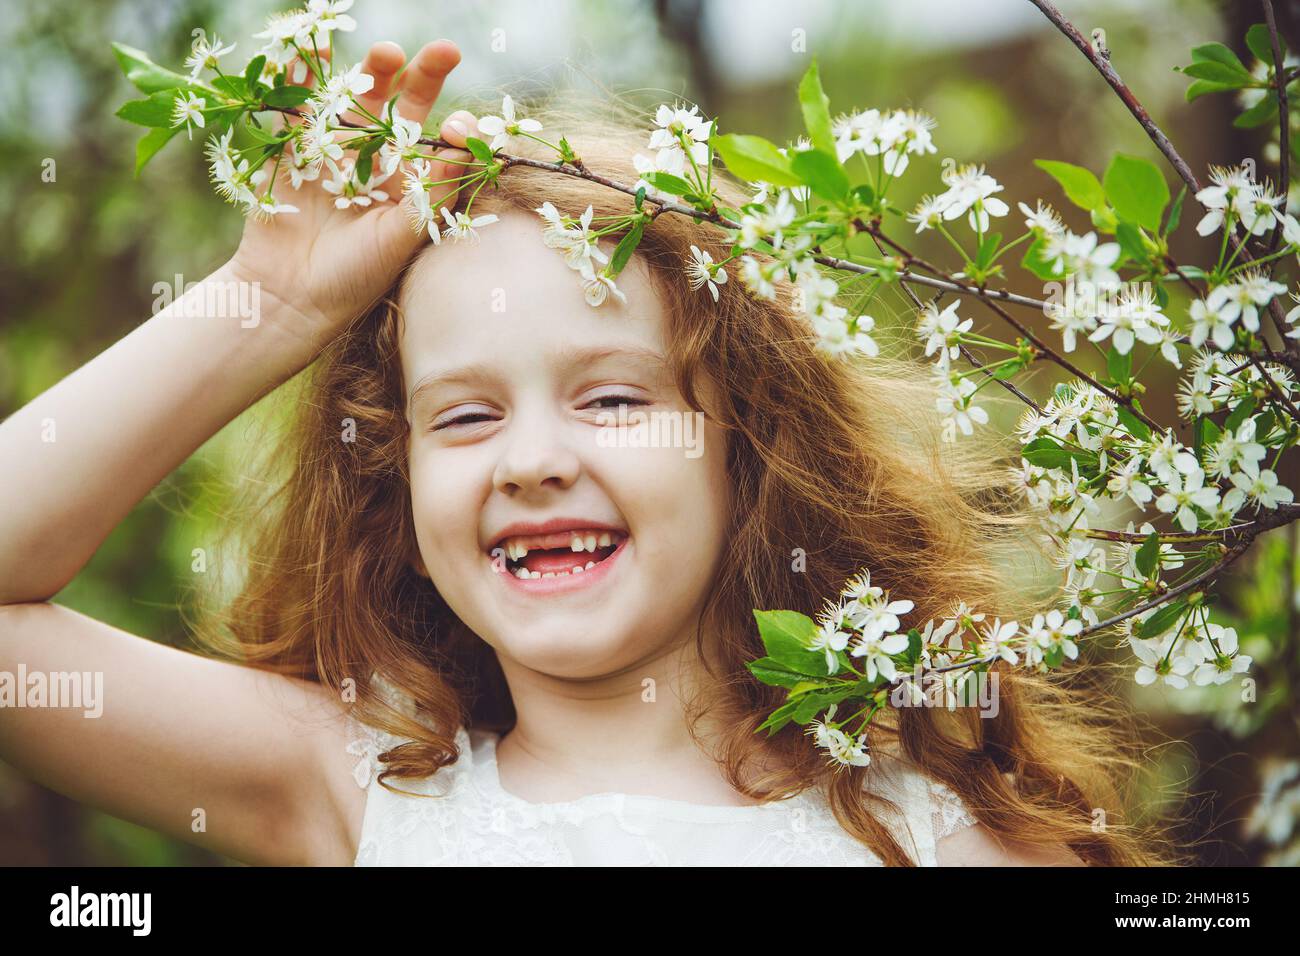 Riendo niña sin dientes vestido blanco cerca de árboles de cerezo florecientes. Sonrisa feliz y saludable. Foto de stock